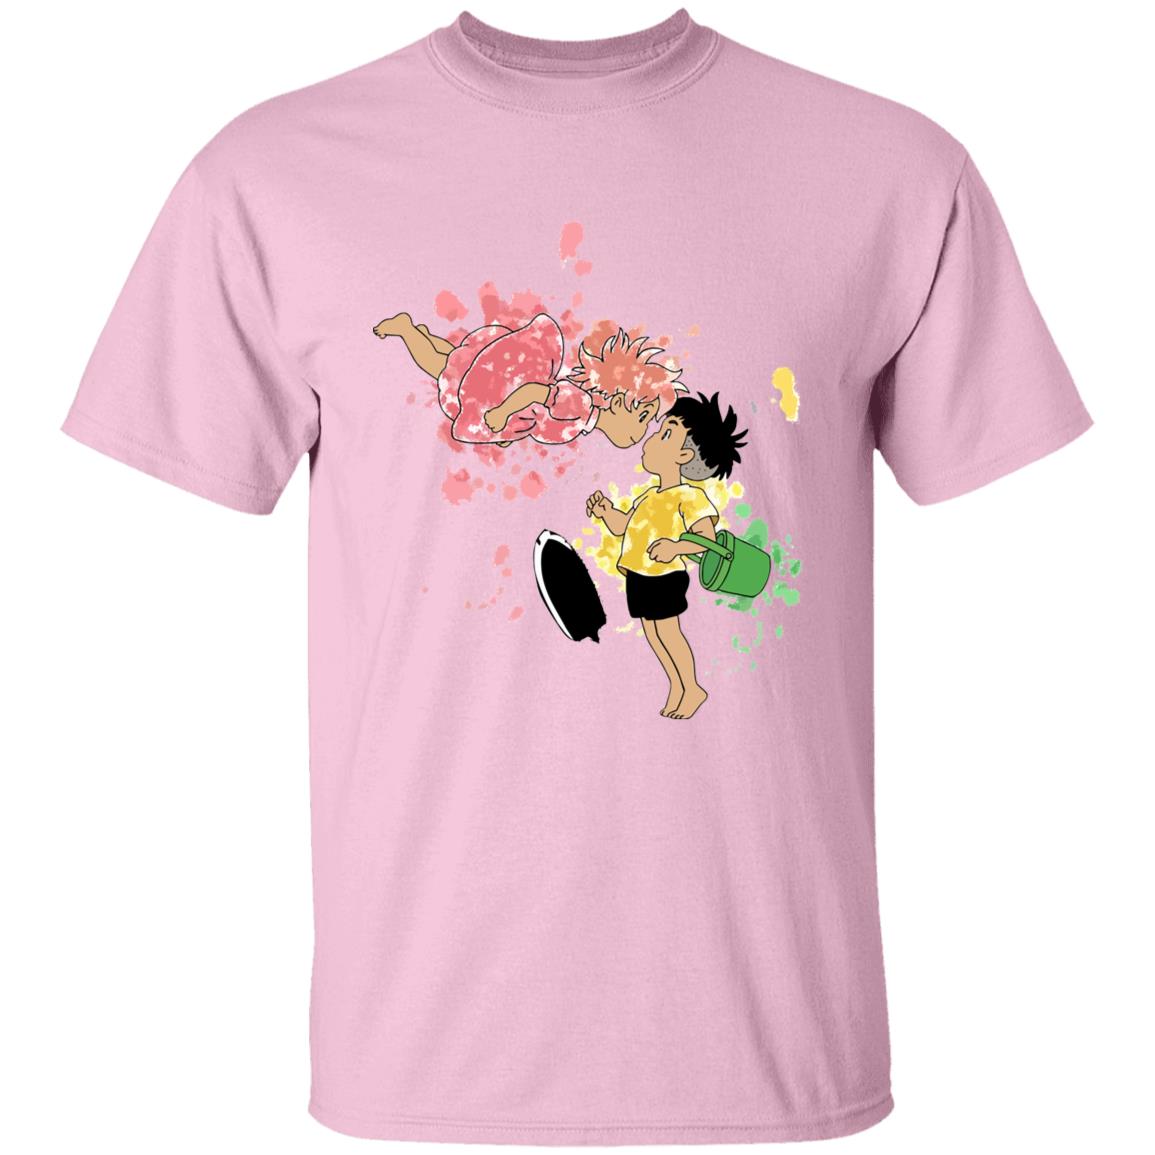 Ponyo and Sosuke Colorful T Shirt Unisex